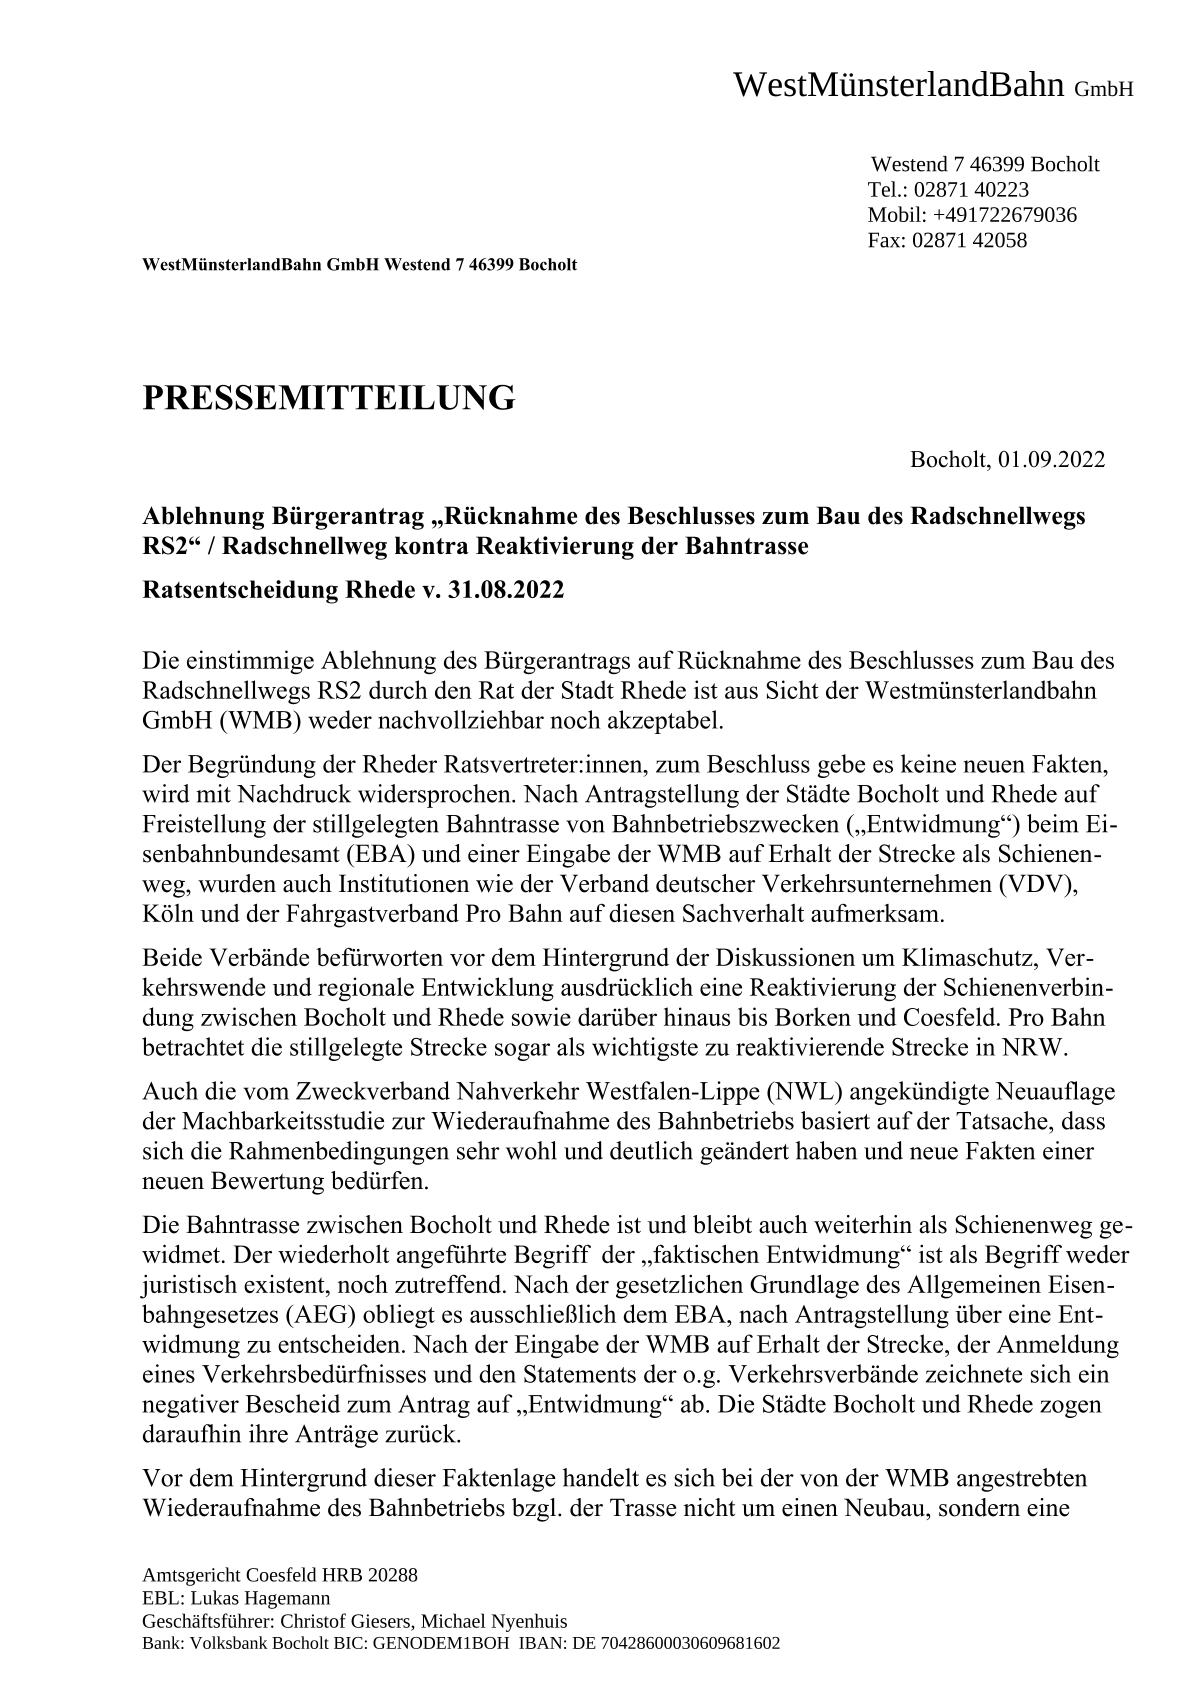 WMB-Pressemitteillung v. 25.10.2022 / Stellungnahme zum BBV-Bericht v. 24.10.22  /  Seite 1